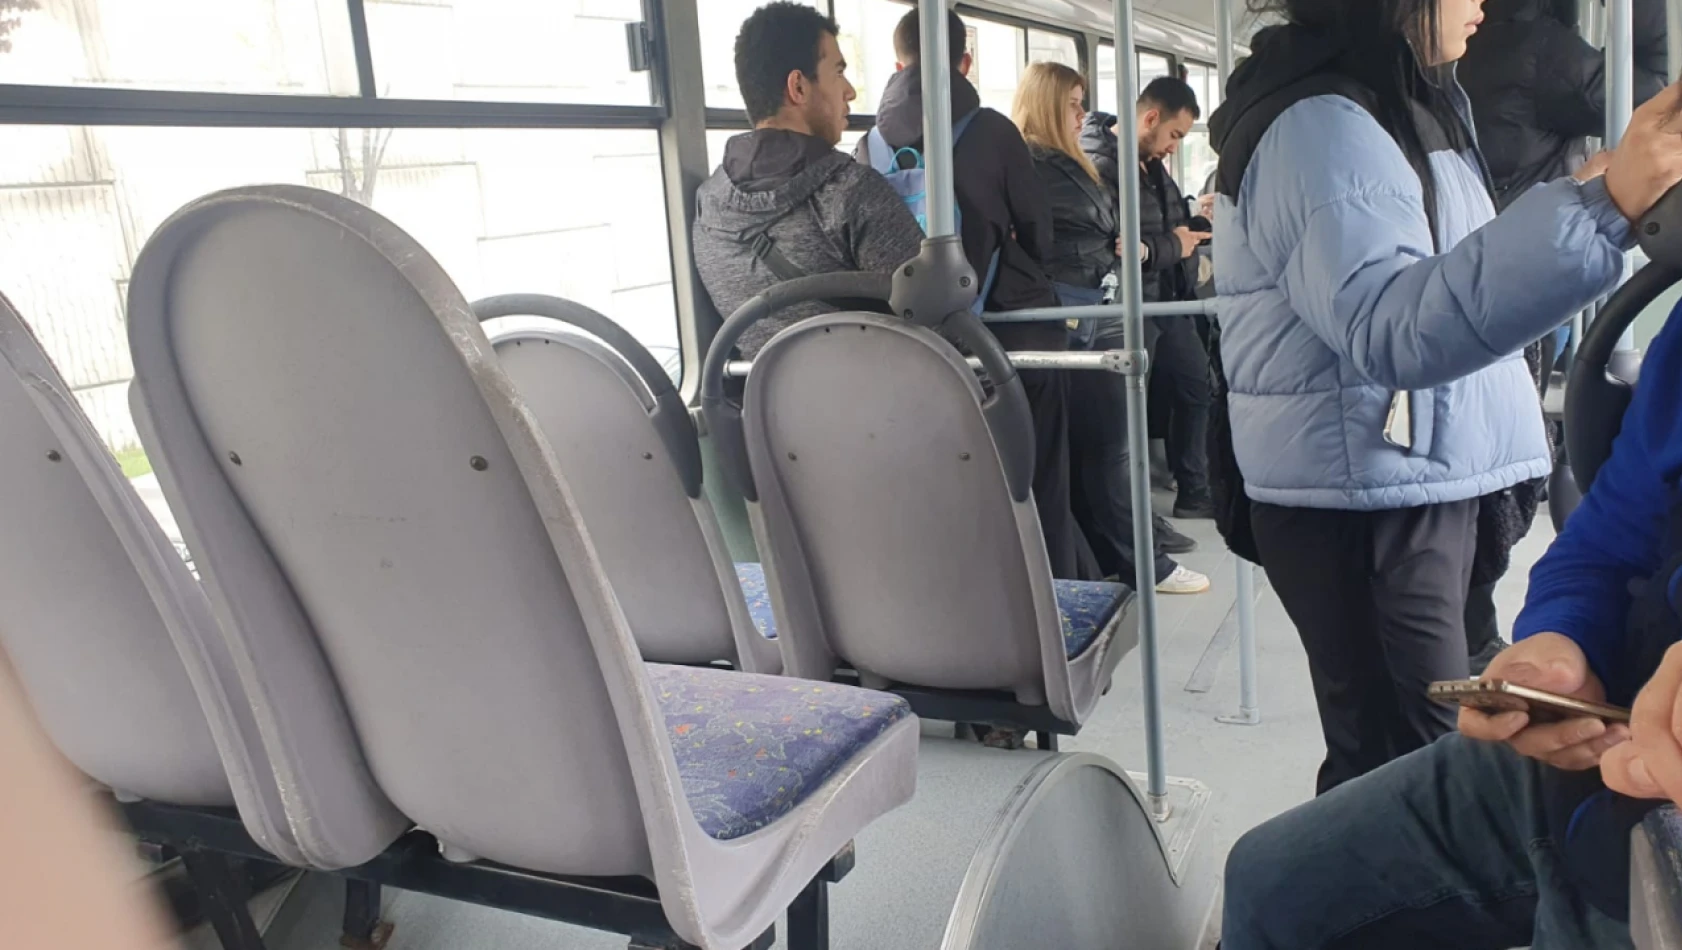 Kayseri'de bu otobüsten herkes şikâyetçi – Bu sefer de kimse koltuklara oturamadı!